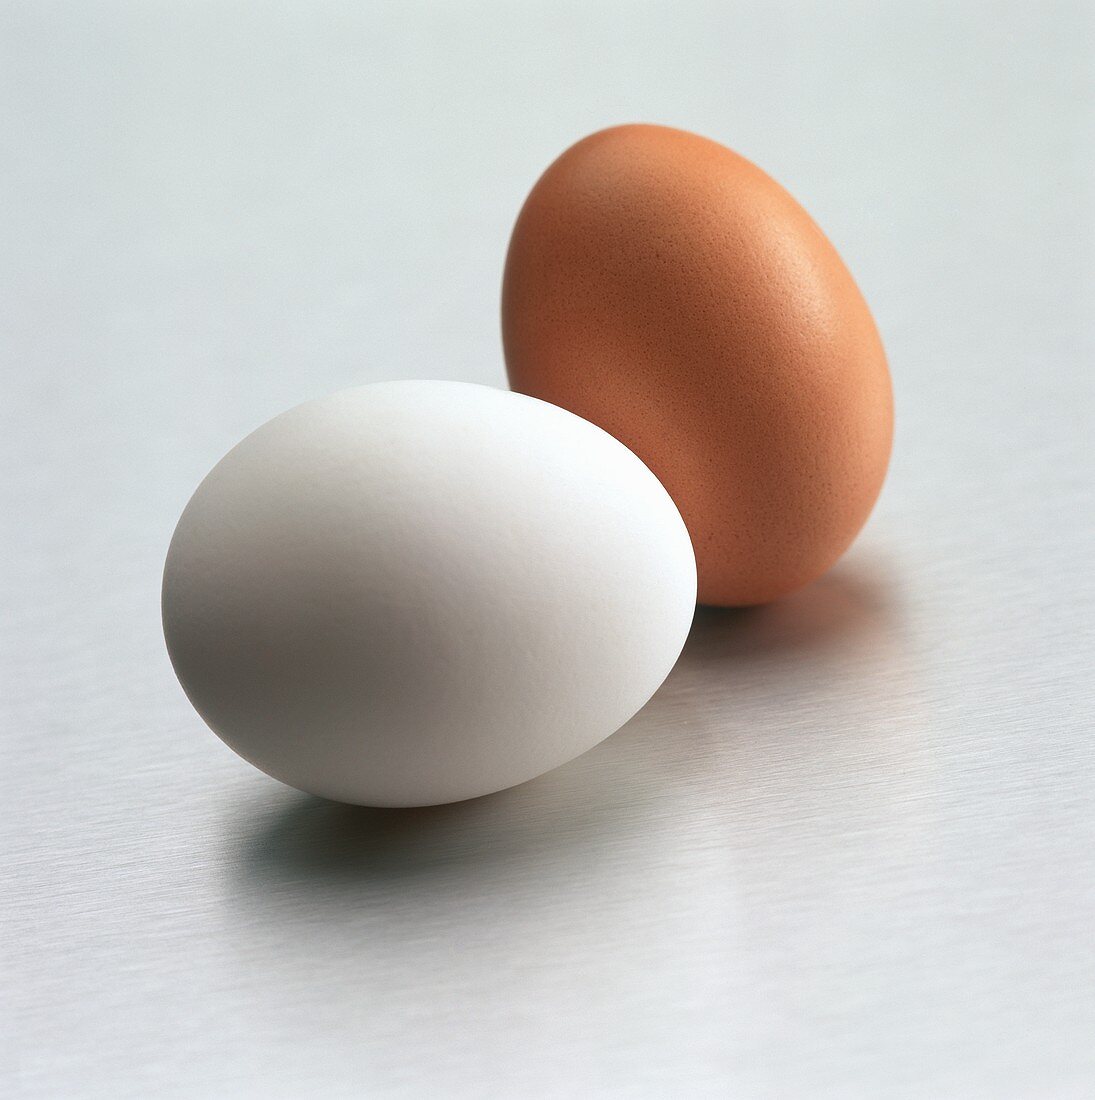 Ein braunes und ein weißes Ei